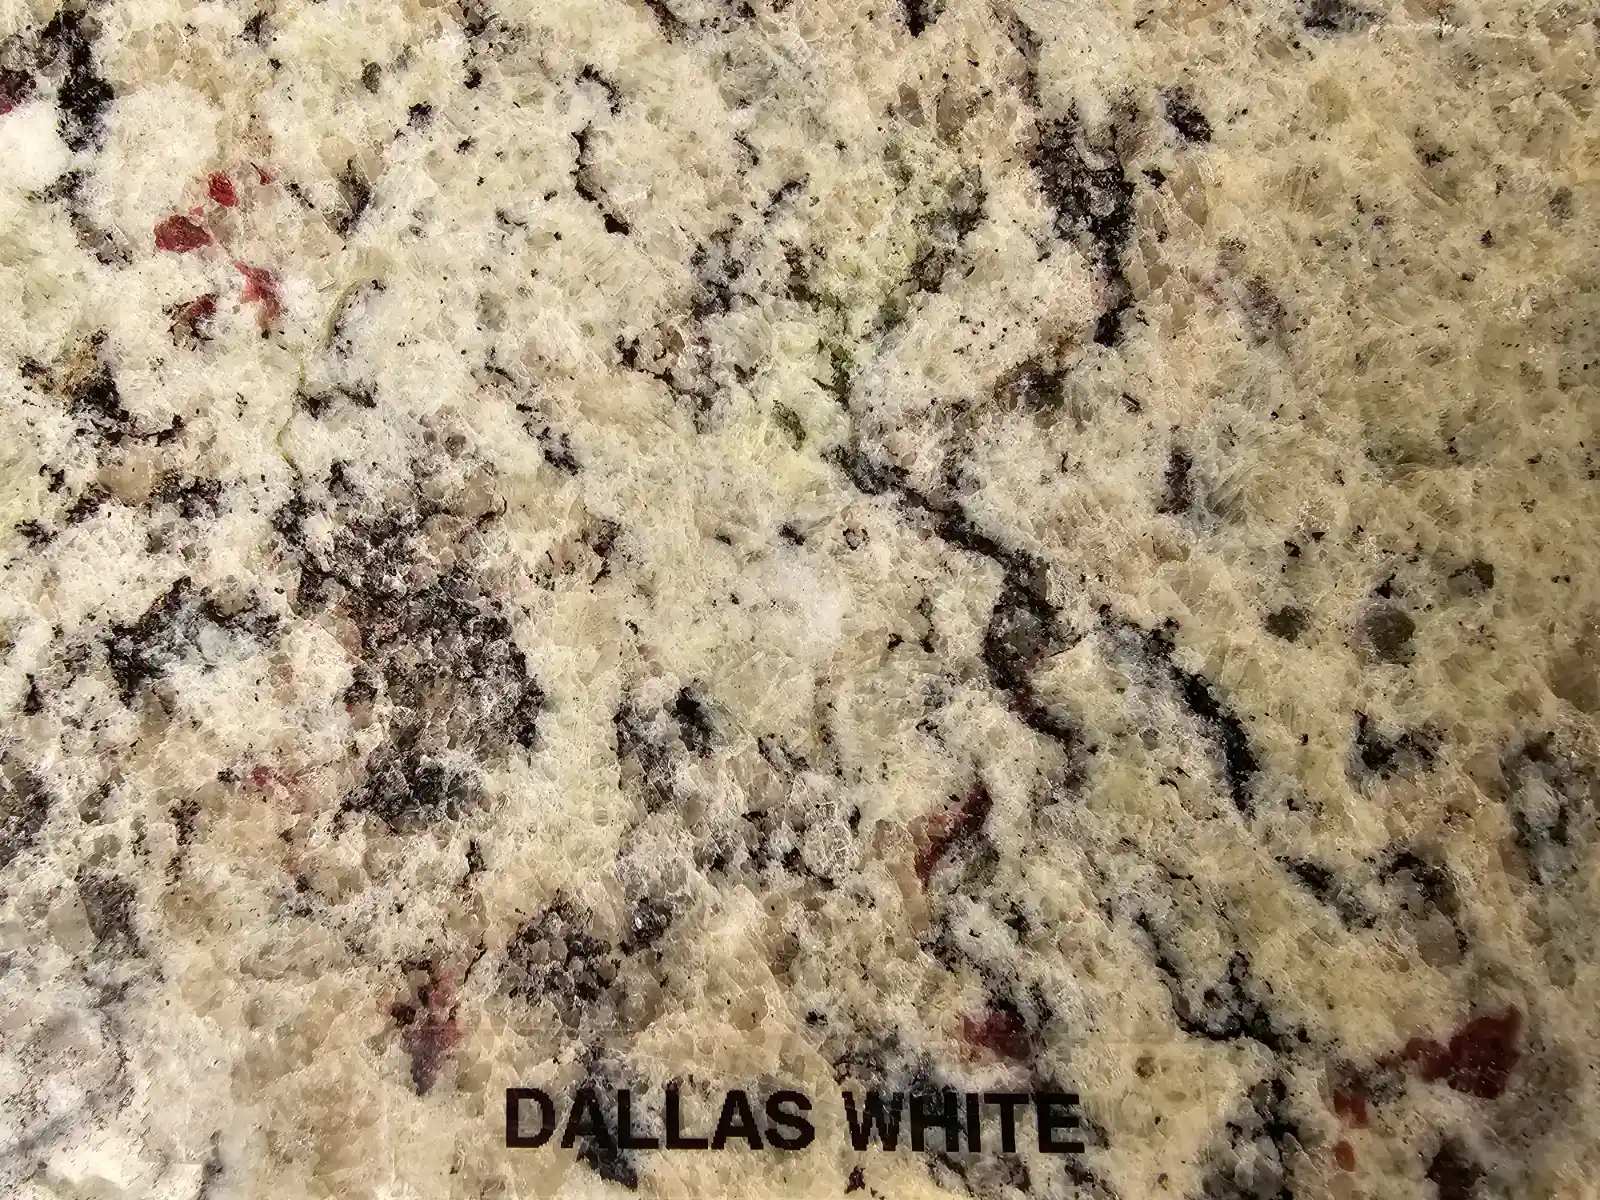 Dallas White granite countertop style and material